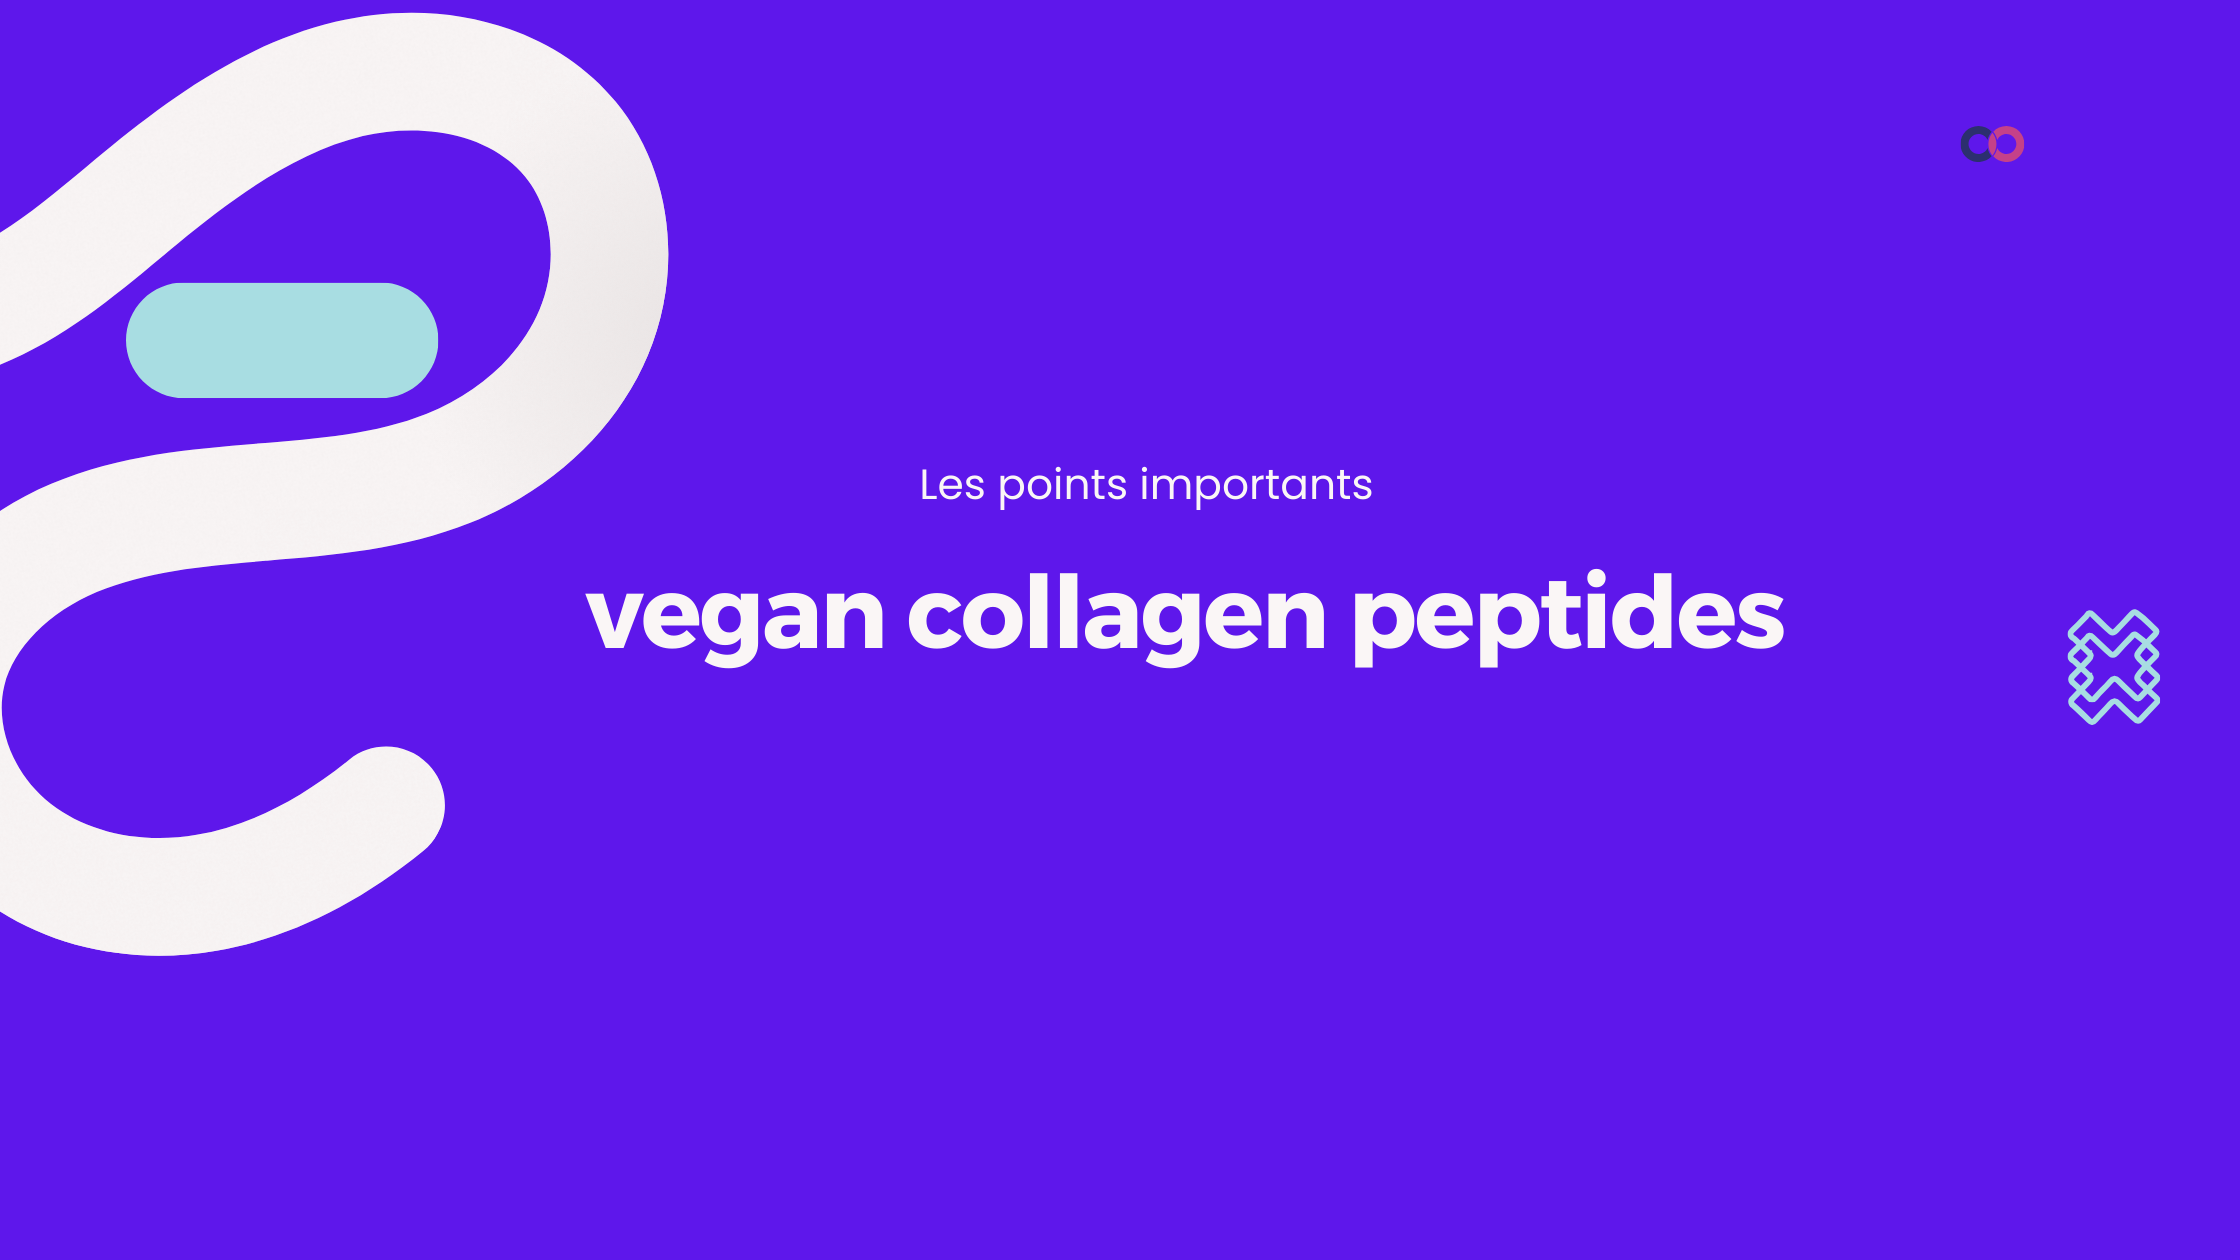 vegan collagen peptides | Les points importants